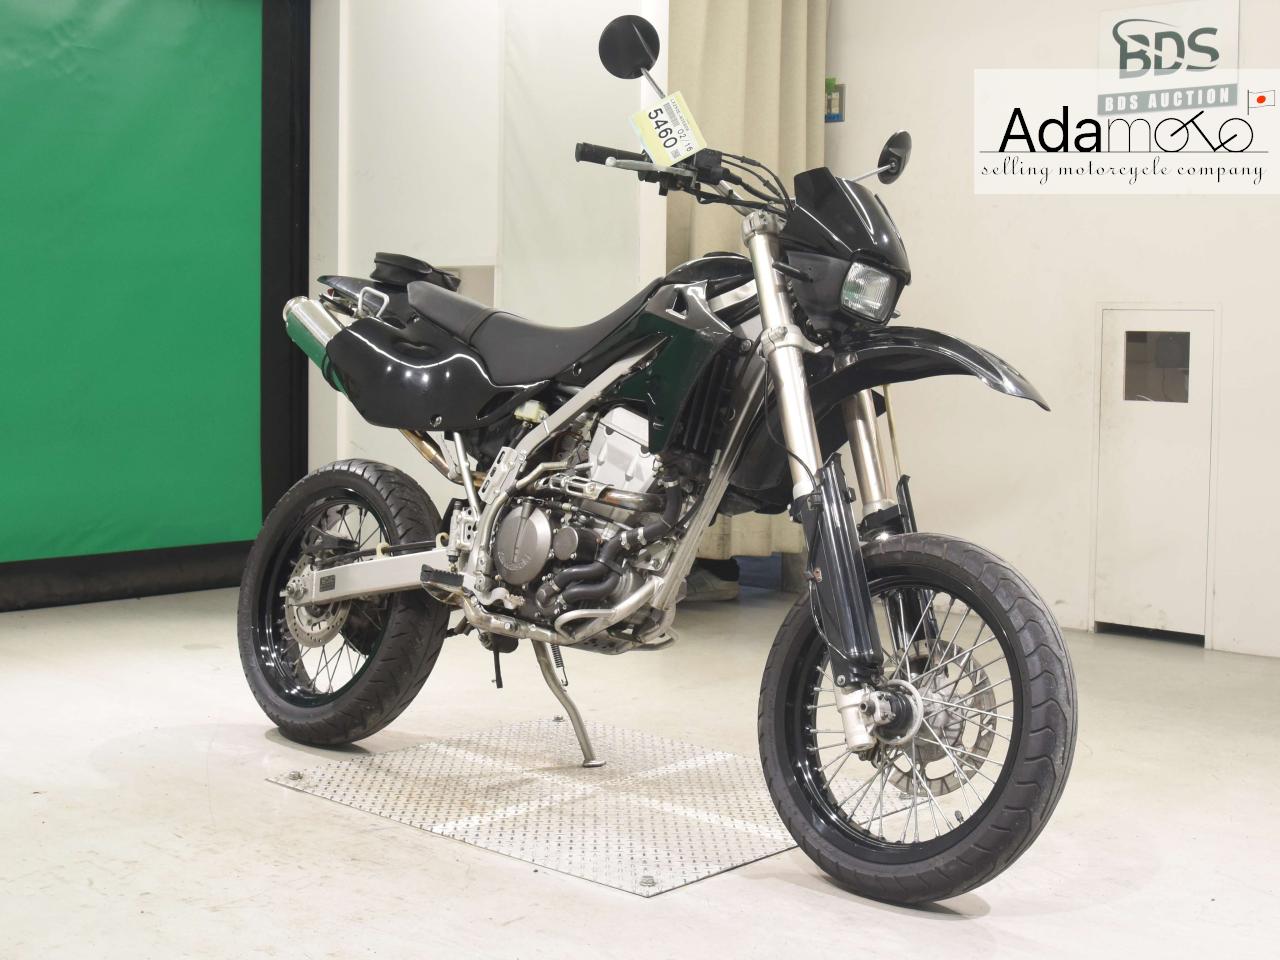 Kawasaki D TRACKER - Adamoto - Motorcycles from Japan